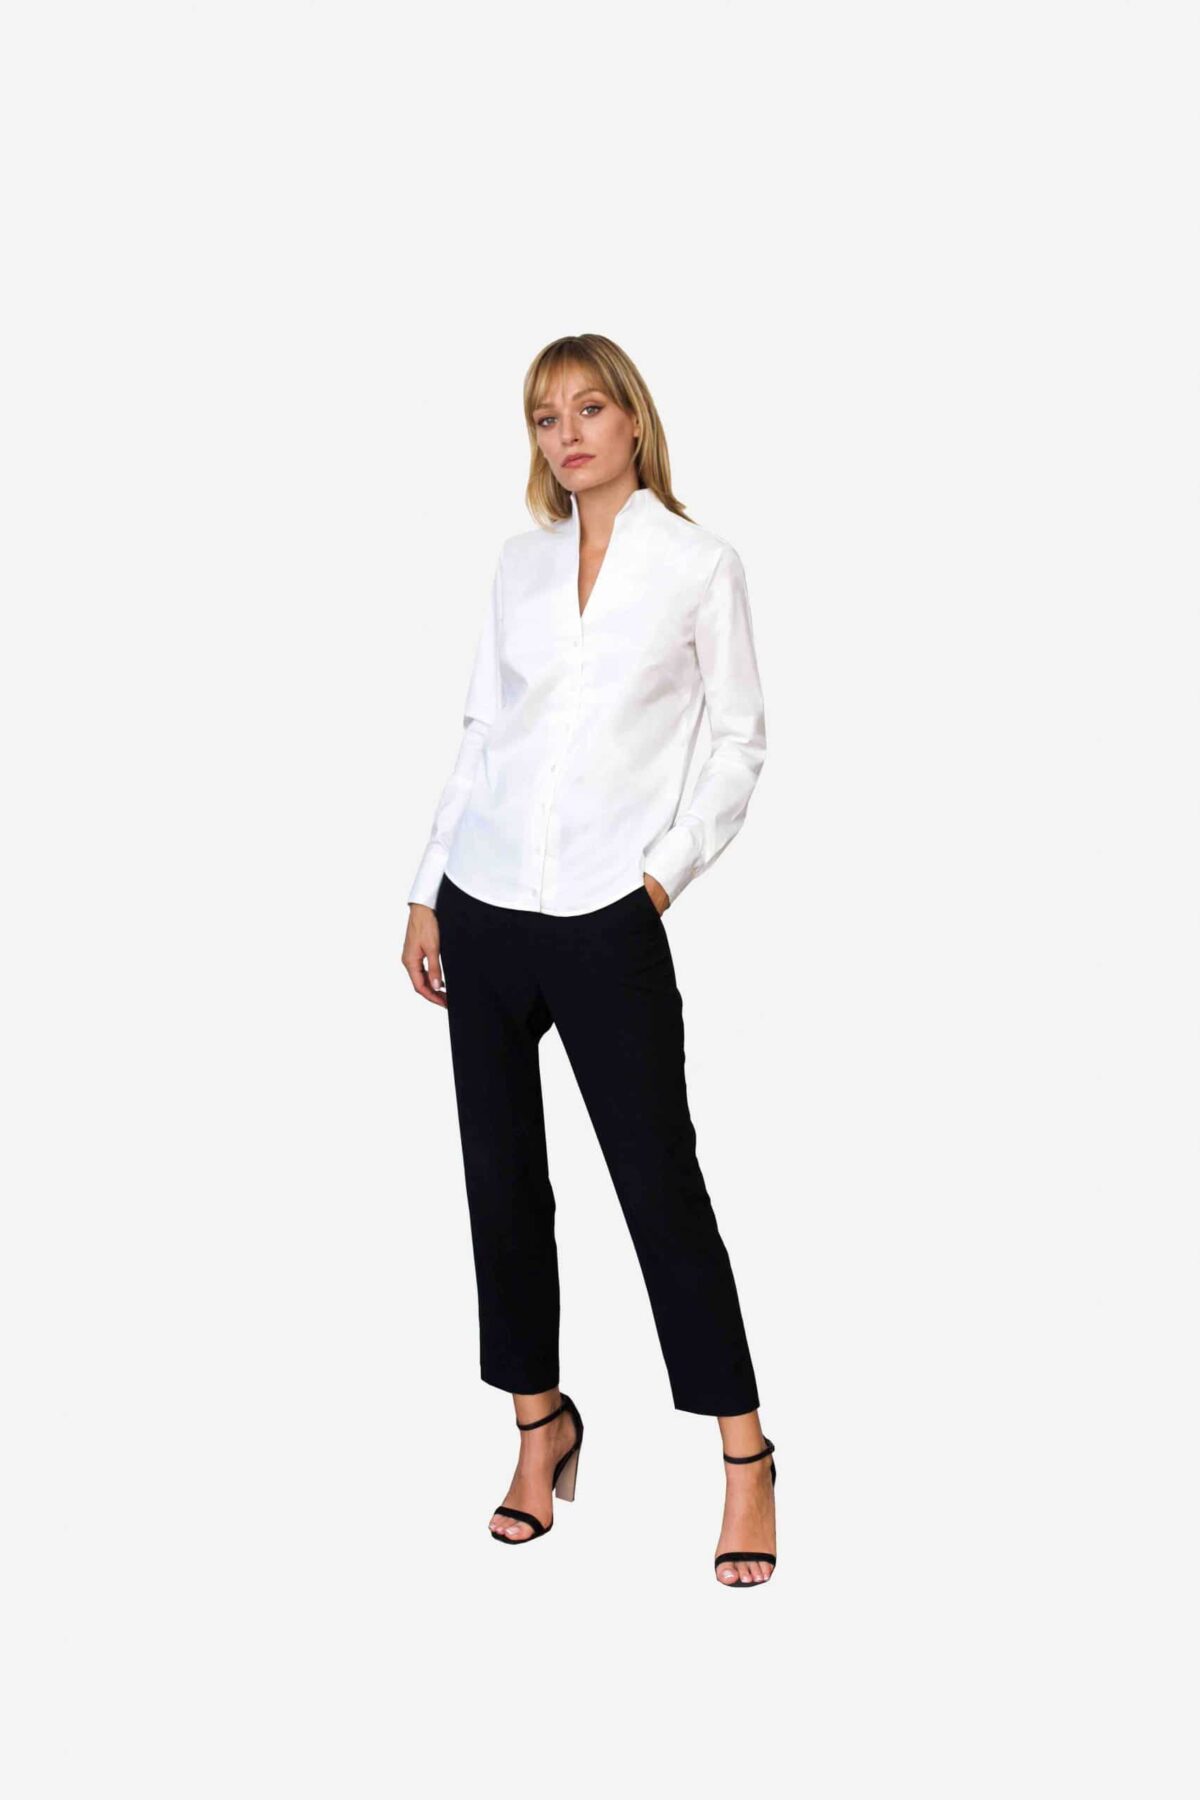 Bluse Sheirlyn von SANOGE. Elegante weiße Business Bluse mit Kelchkragen. Mondänes Design von Deutschem Designerlabel.